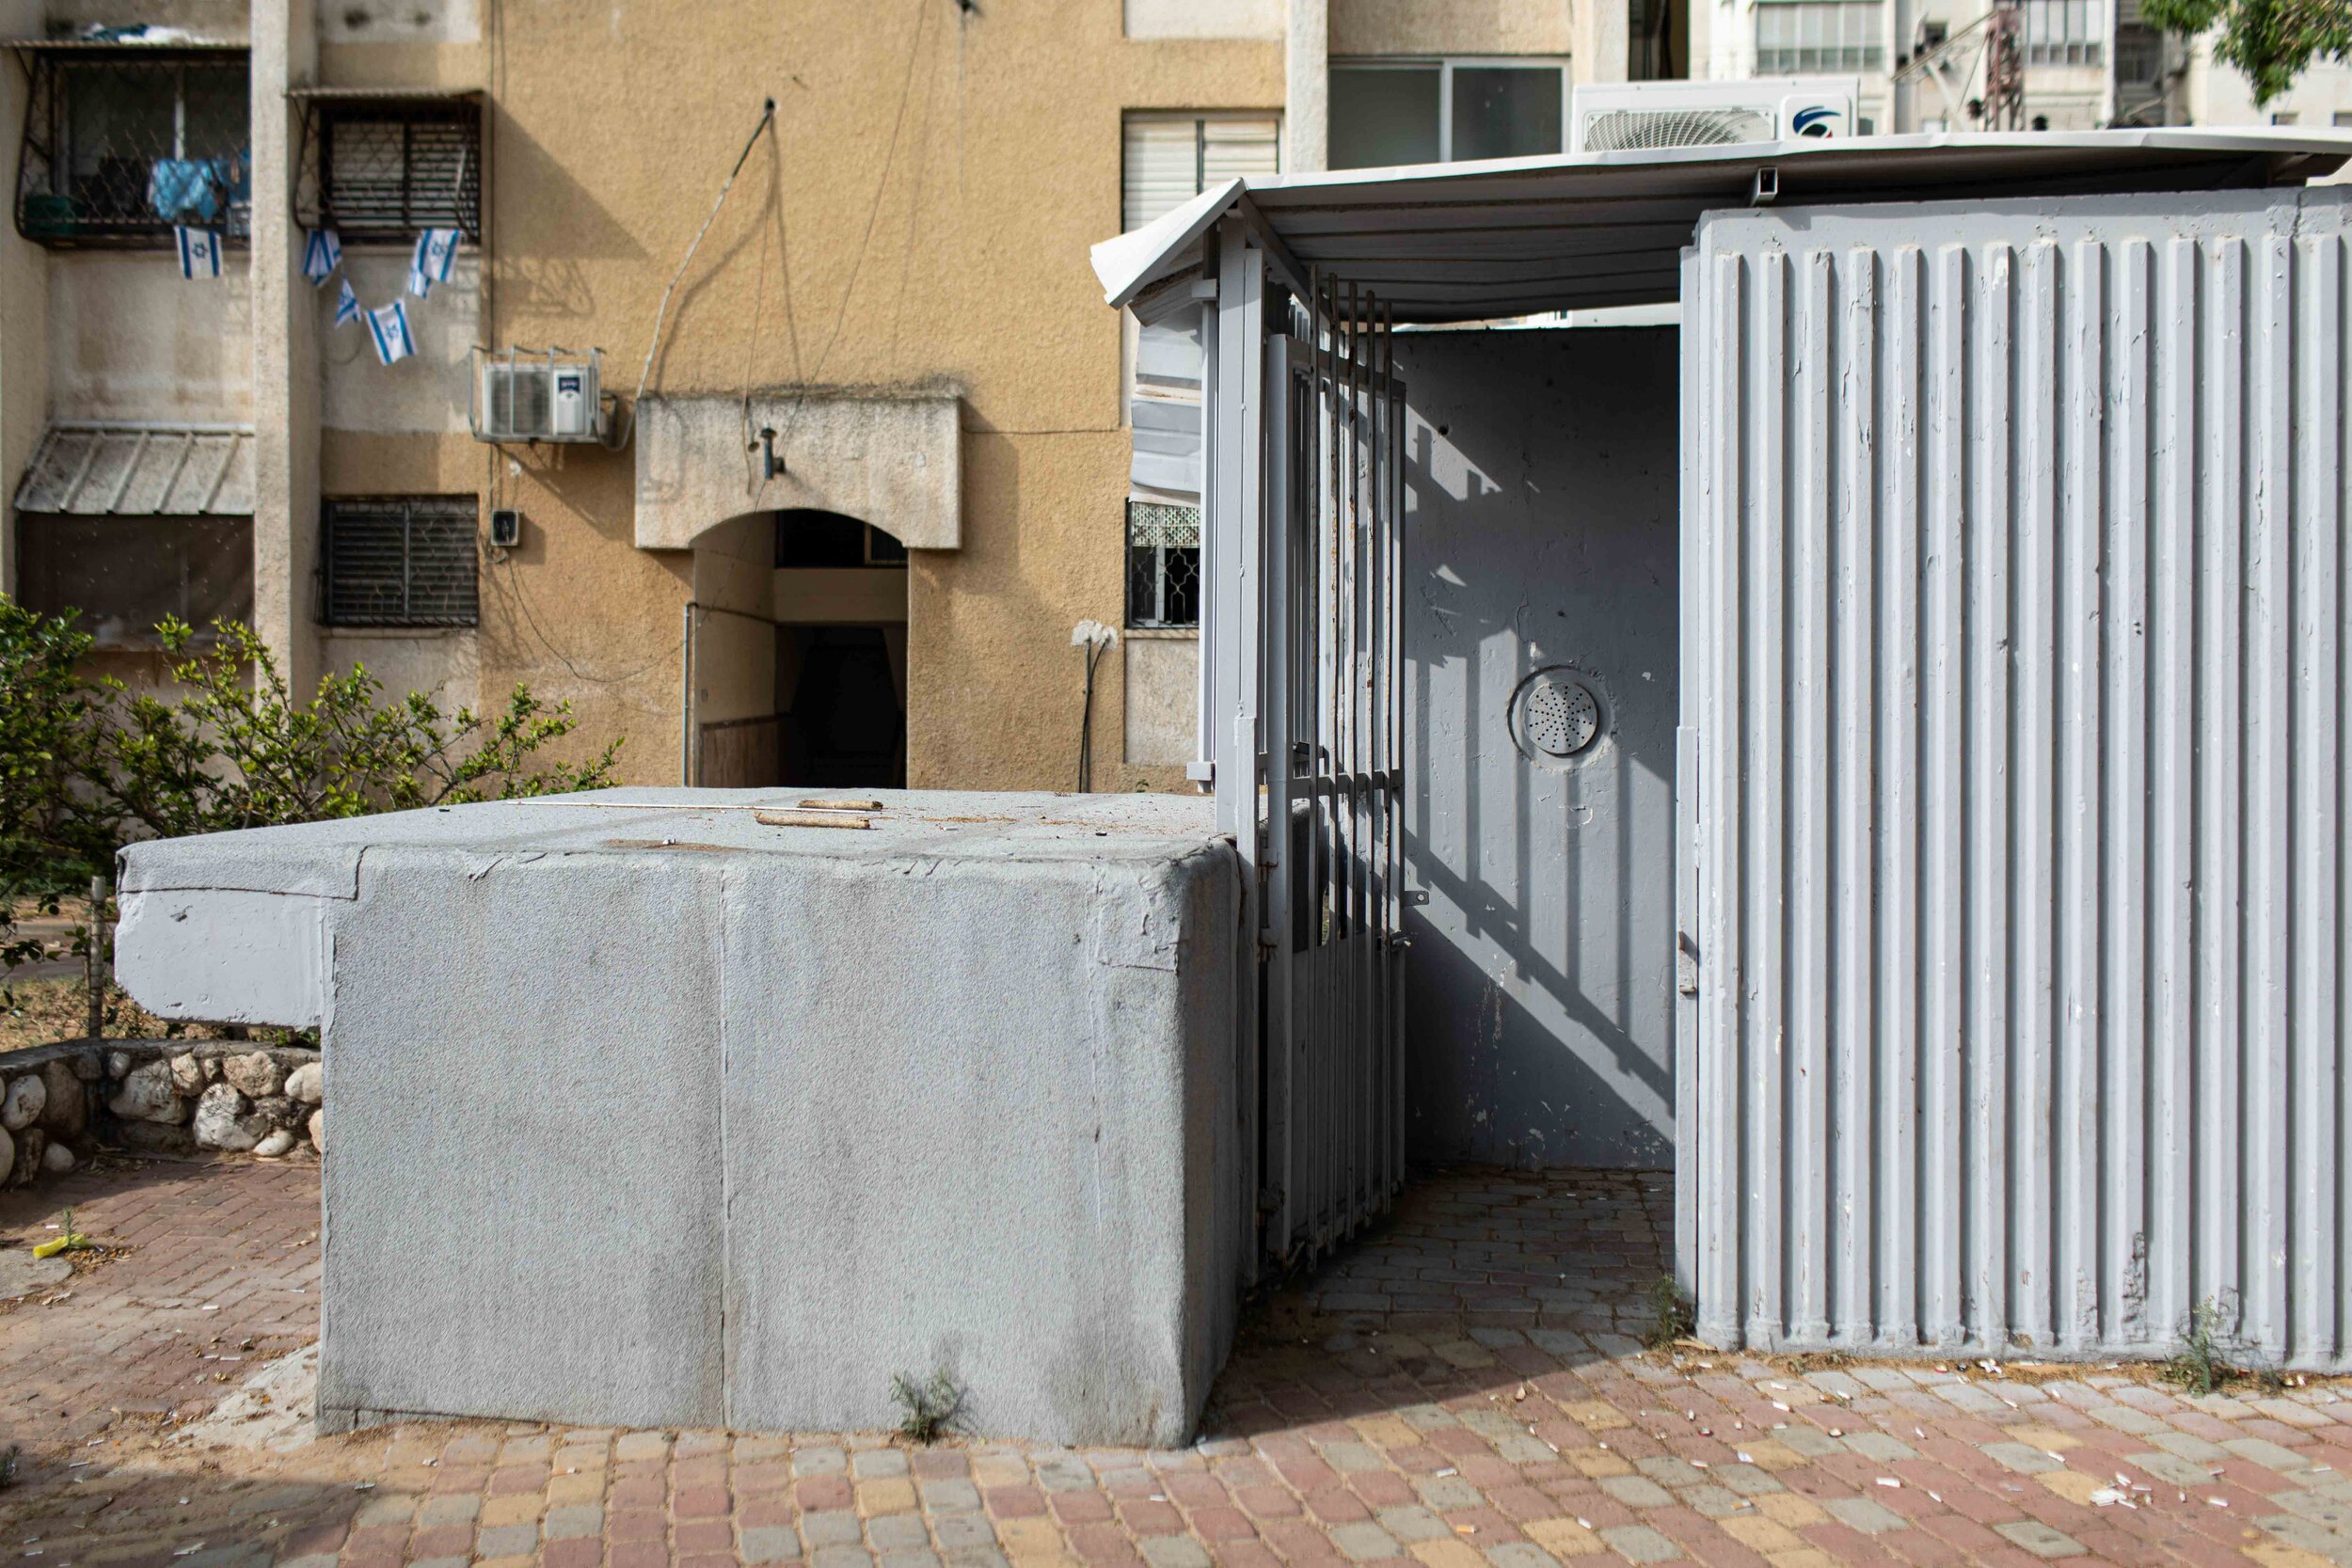 Israeli public shelters